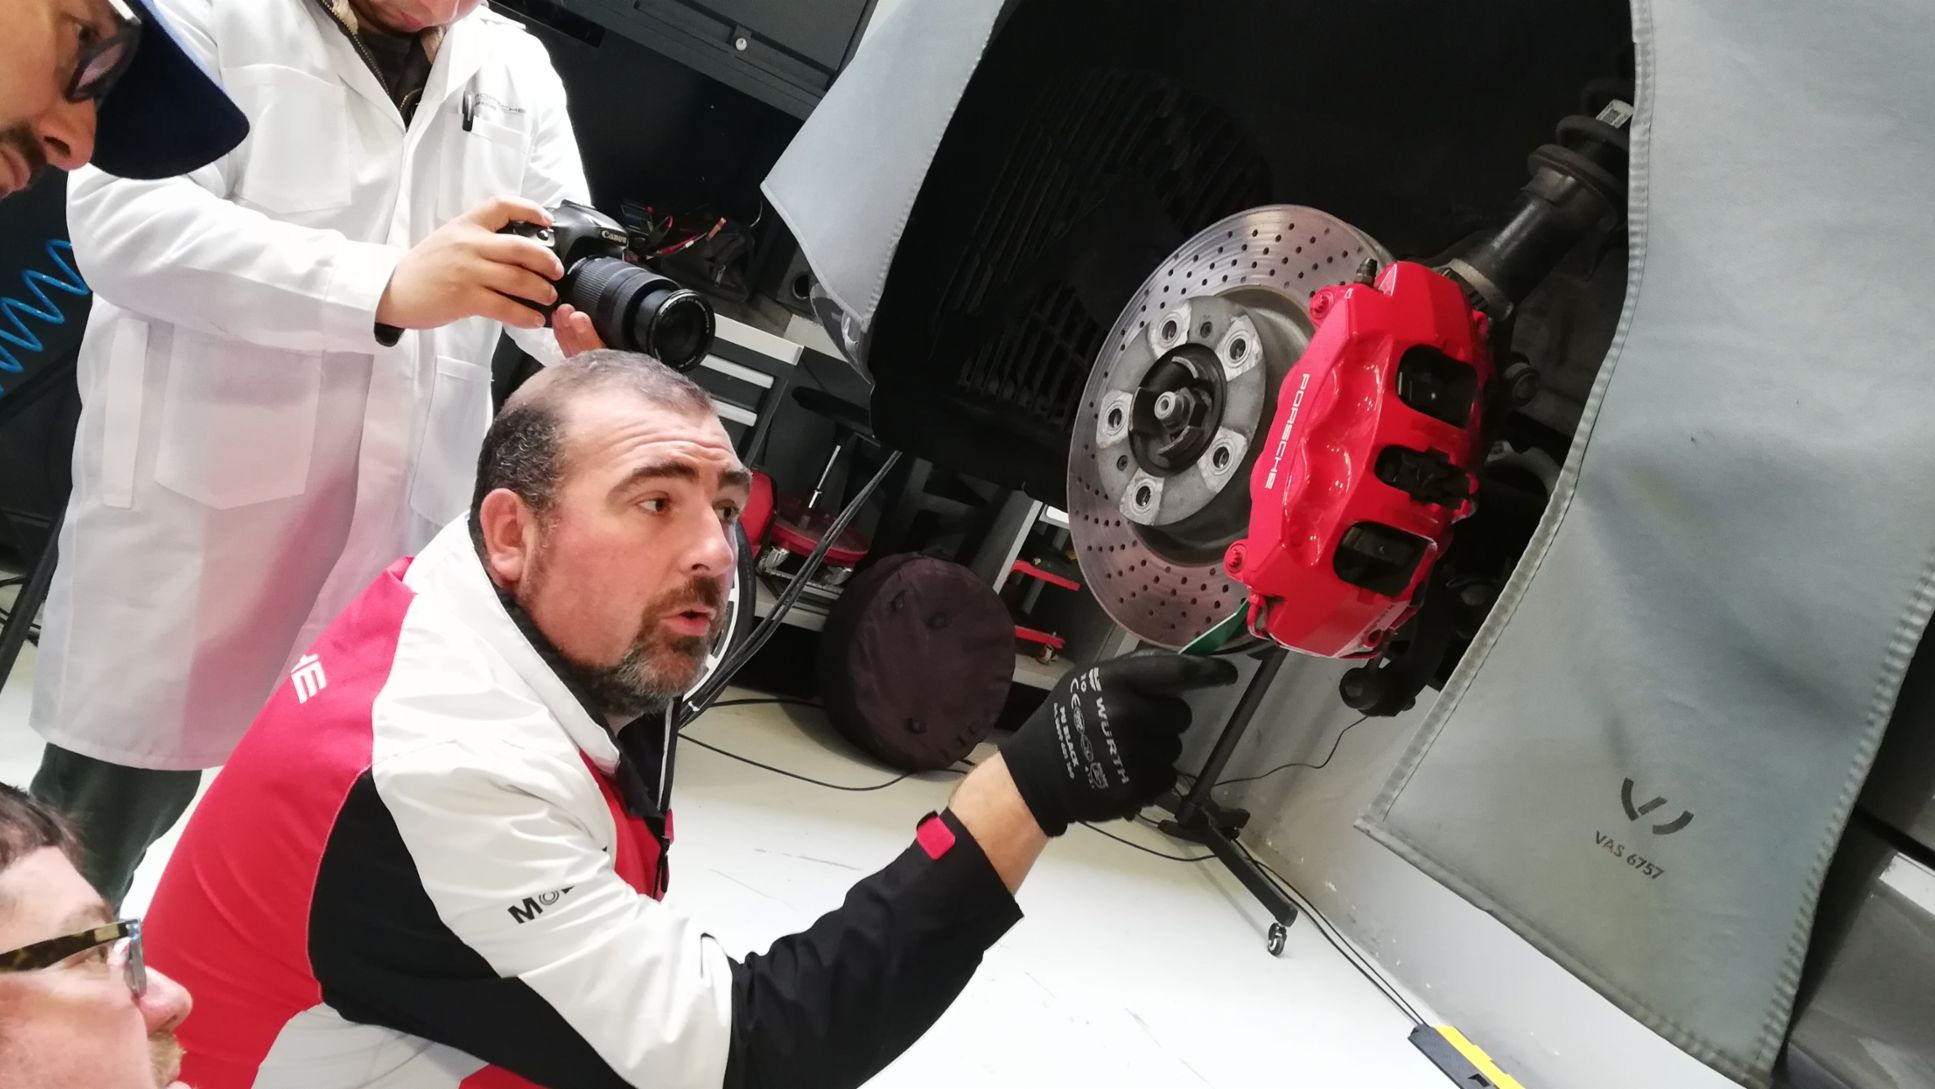 Francisco Carvajal, Gerente Técnico de Porsche en Chile, revisa el sistema de frenos de un Porsche Boxster.